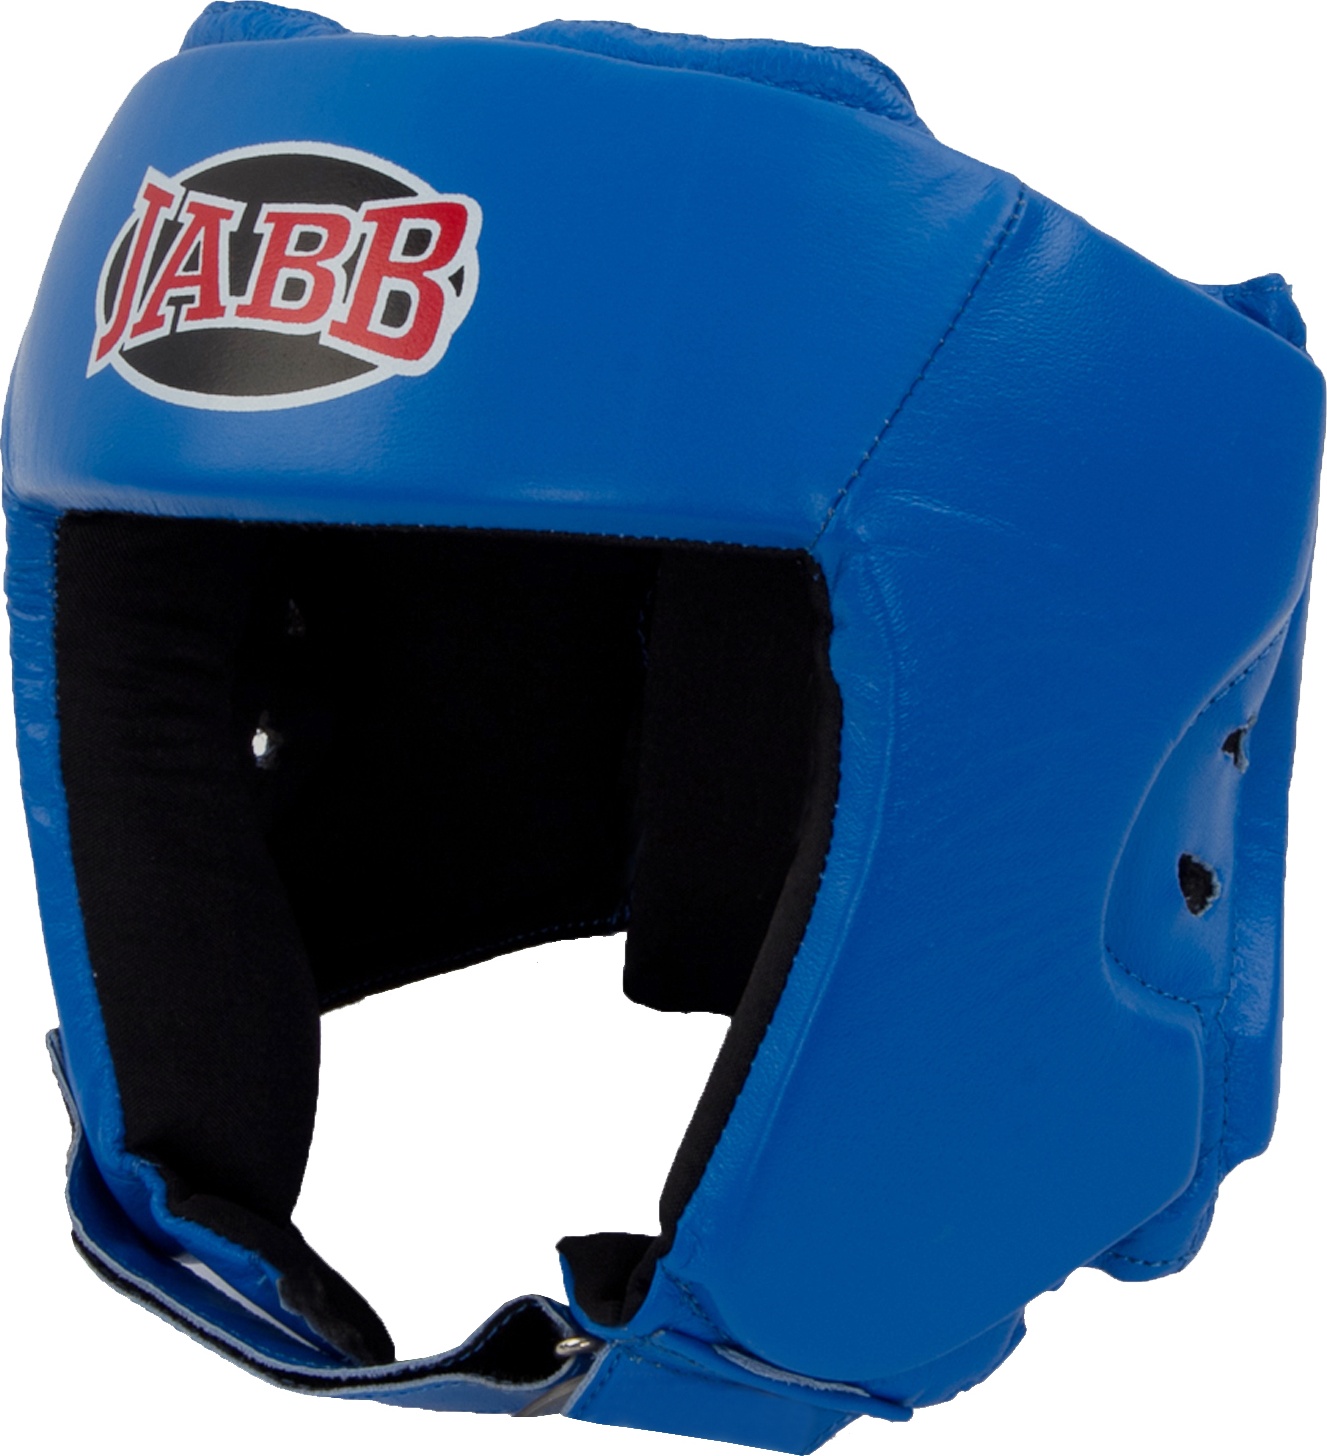 Боксерский шлем Jabb JE-2004 синий XL